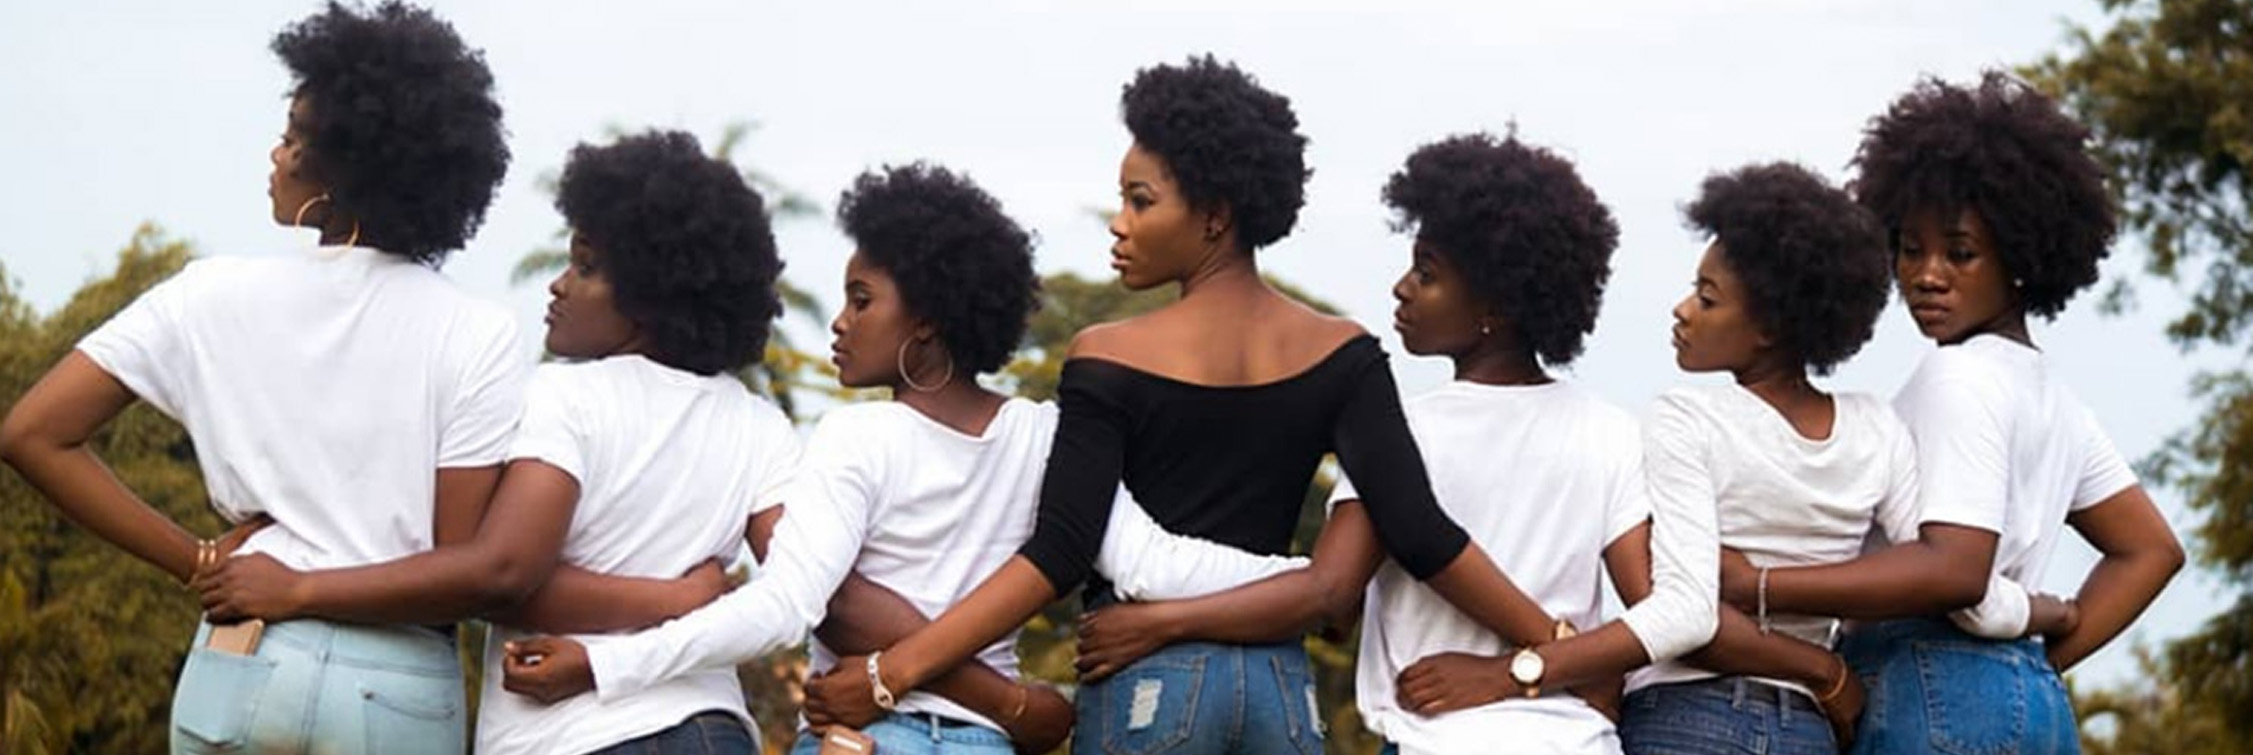 La estética afro como resistencia racial en concursos de belleza